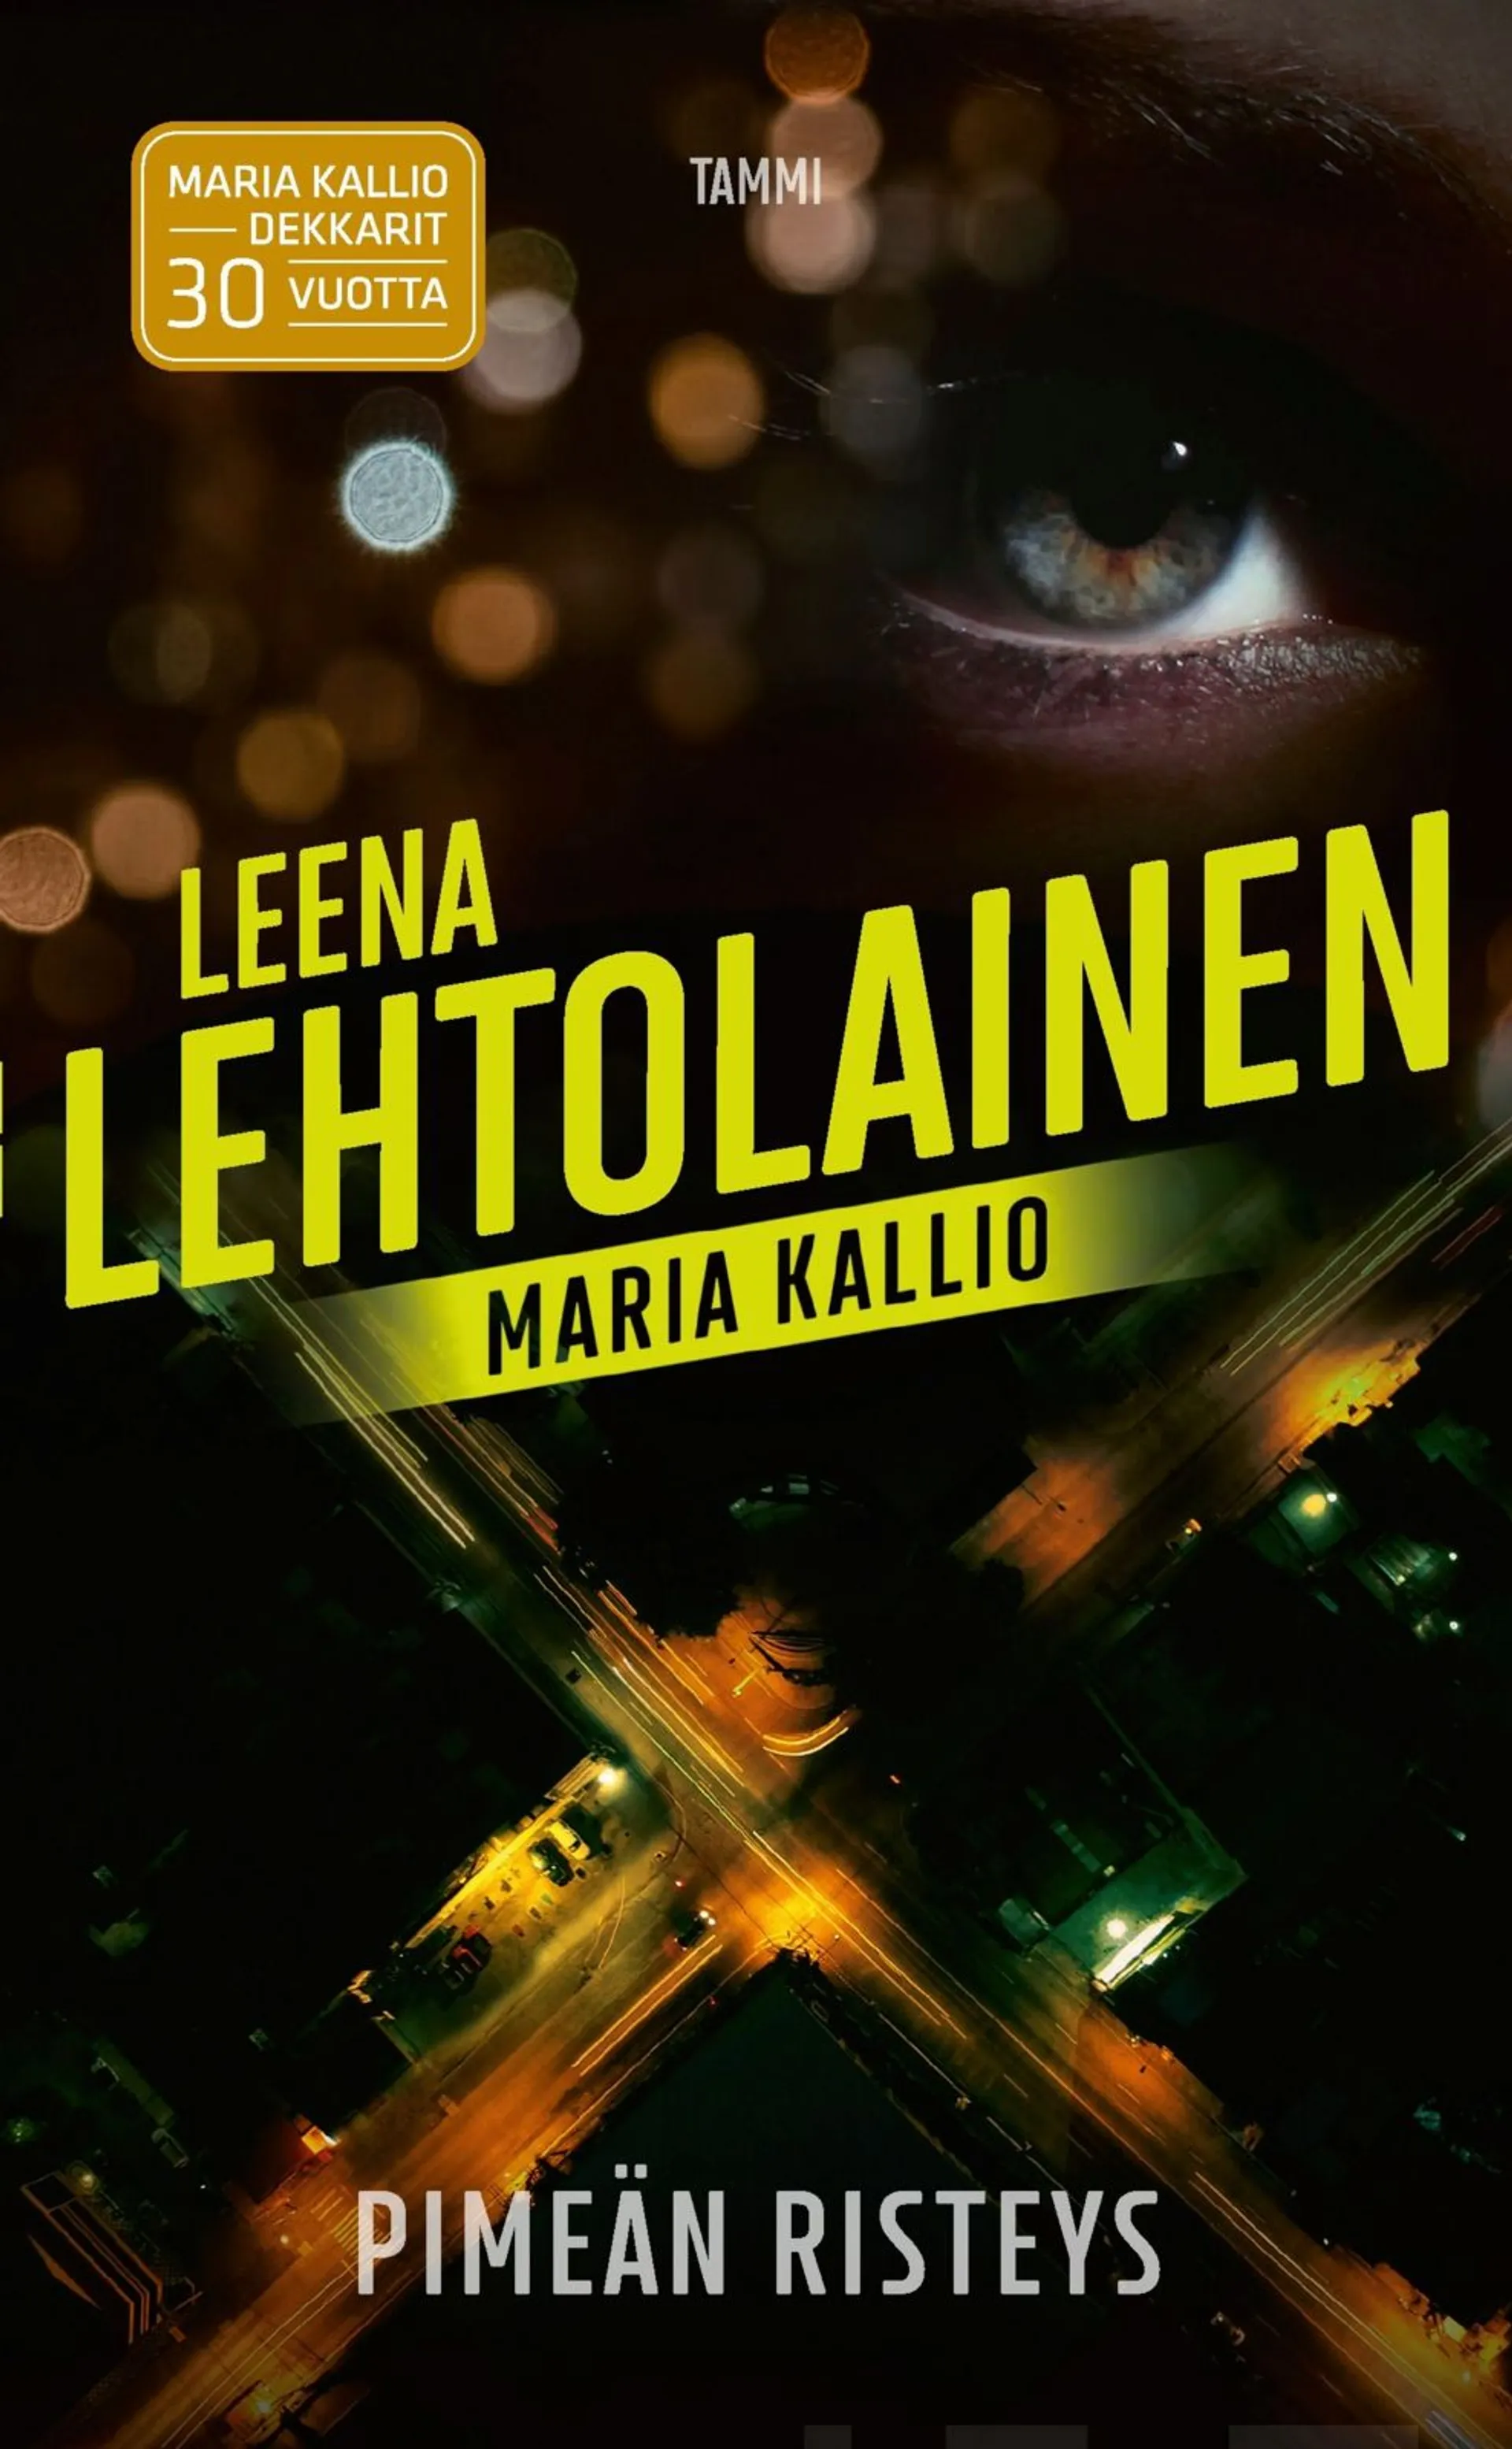 Lehtolainen, Pimeän risteys - Maria Kallio 16